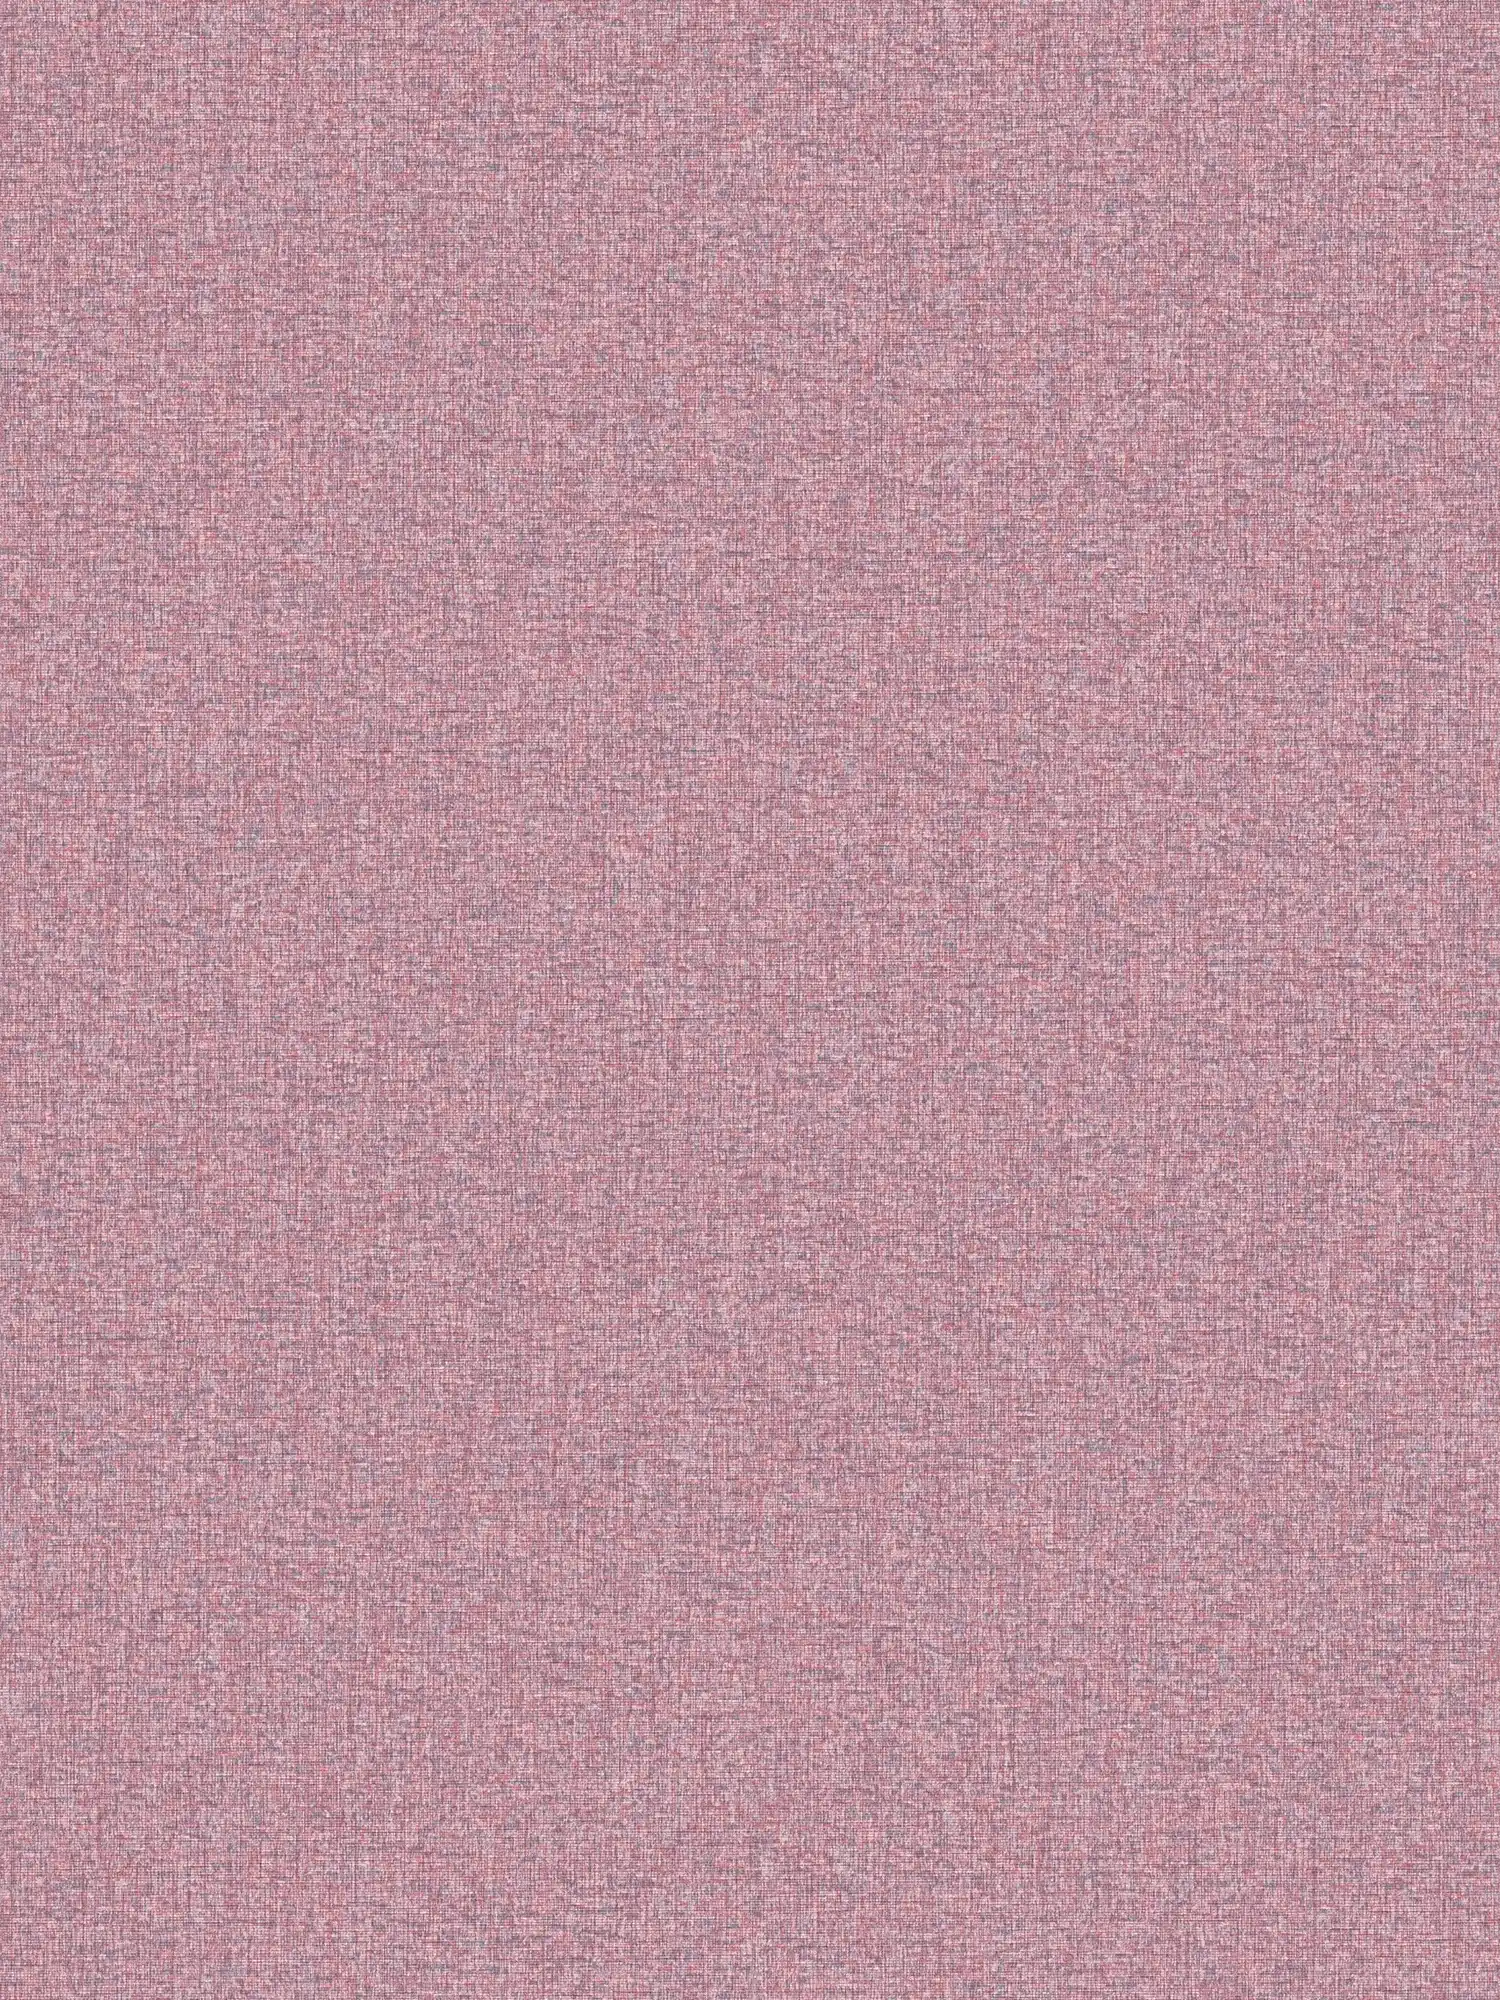 Vliestapete mit Gewebestruktur einfarbig, matt – Violett, Pink
